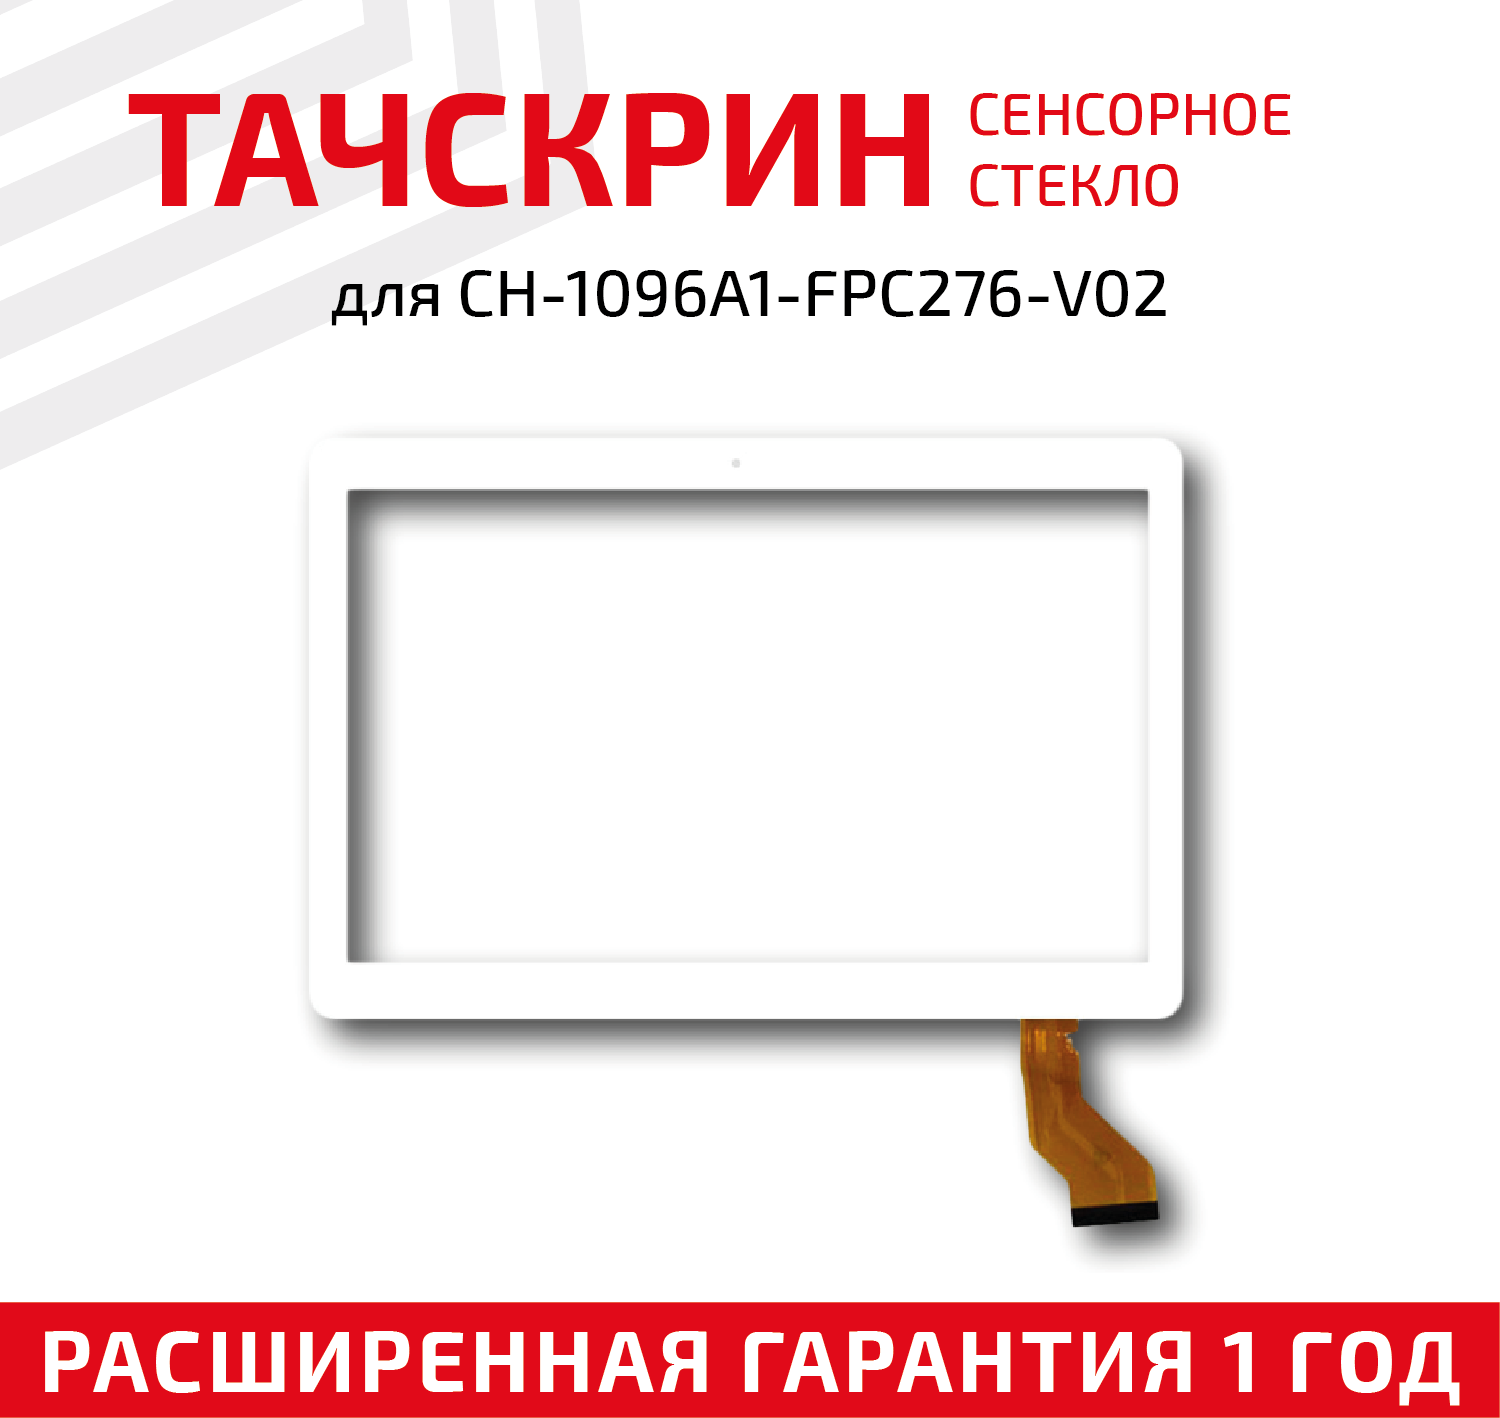 Сенсорное стекло (тачскрин) для планшета CH-1096A1-FPC276-V02 белое 10.1"